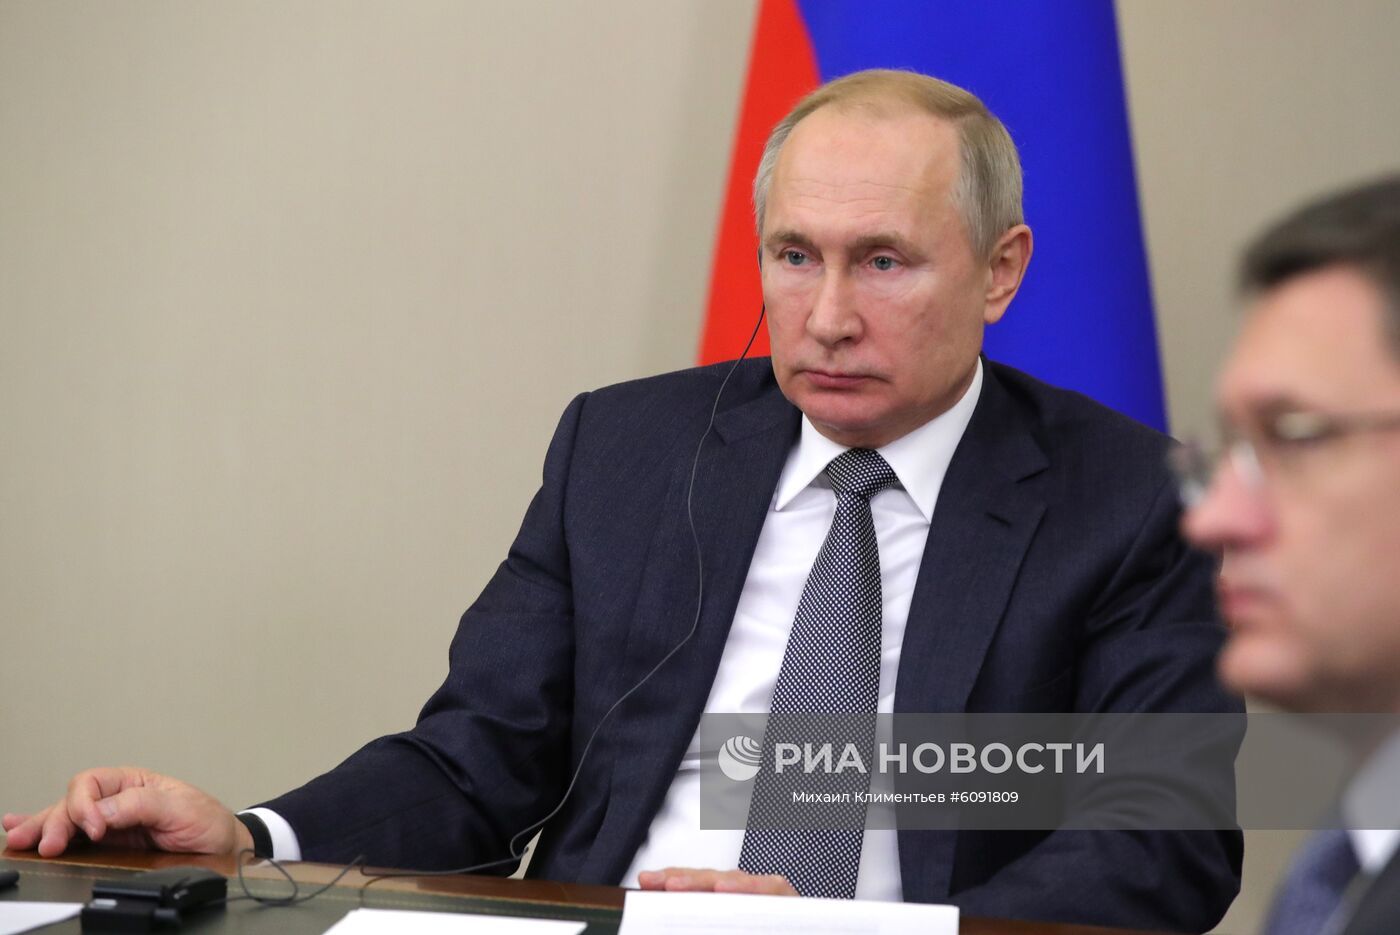 Президент РФ В. Путин принял участие в церемонии начала поставок российского газа в КНР по "восточному" маршруту